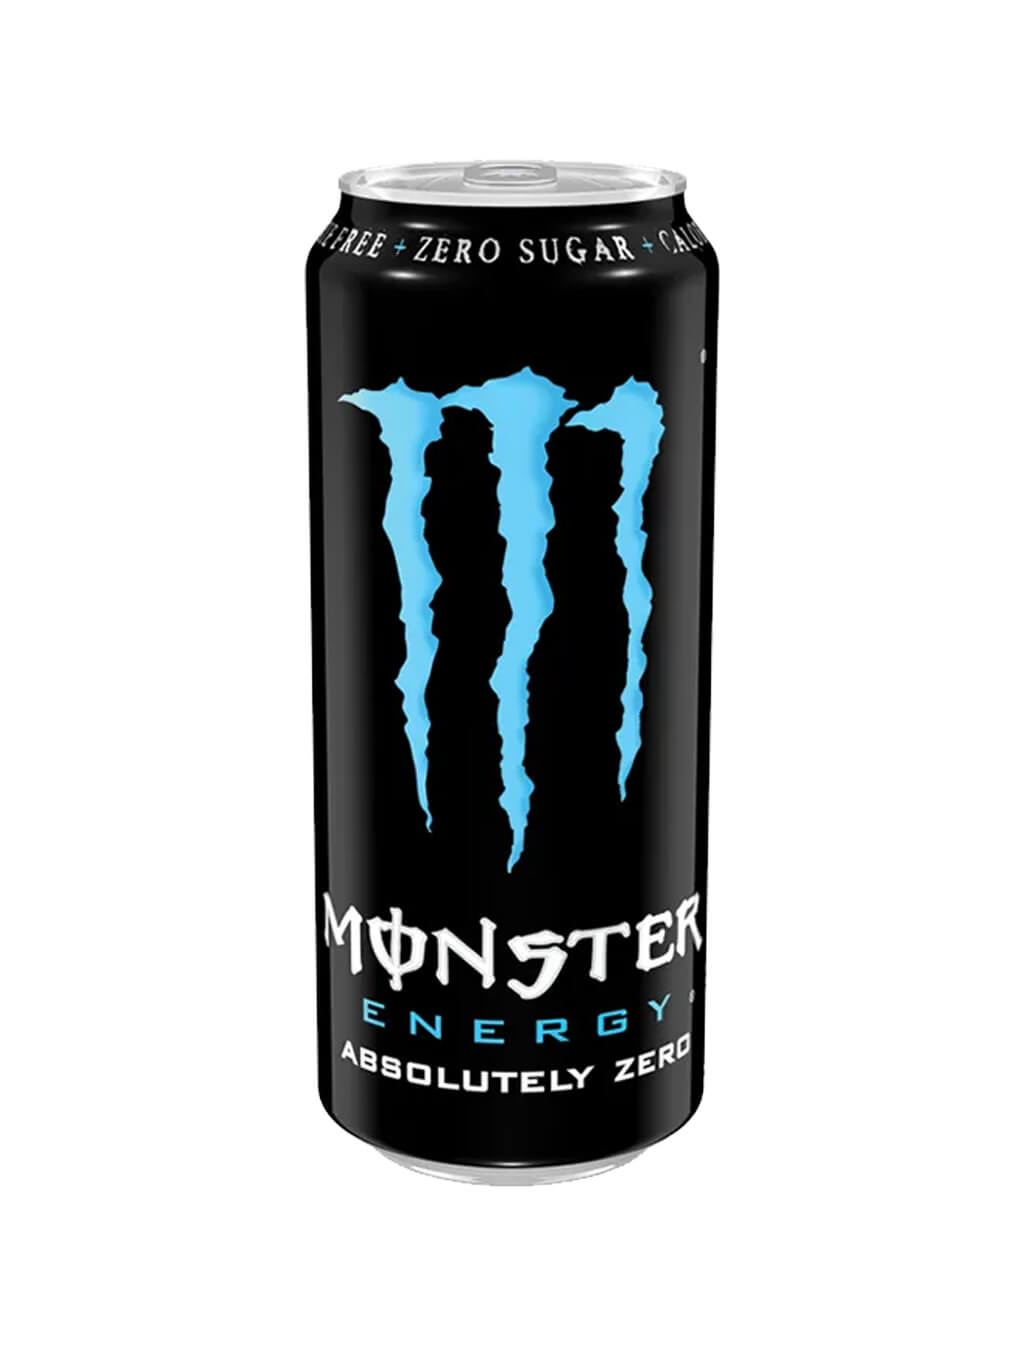 картинка Black Monster Energy Absolutely Zero Черный монстр энергетический напиток Абсолютный ноль банка 500 мл